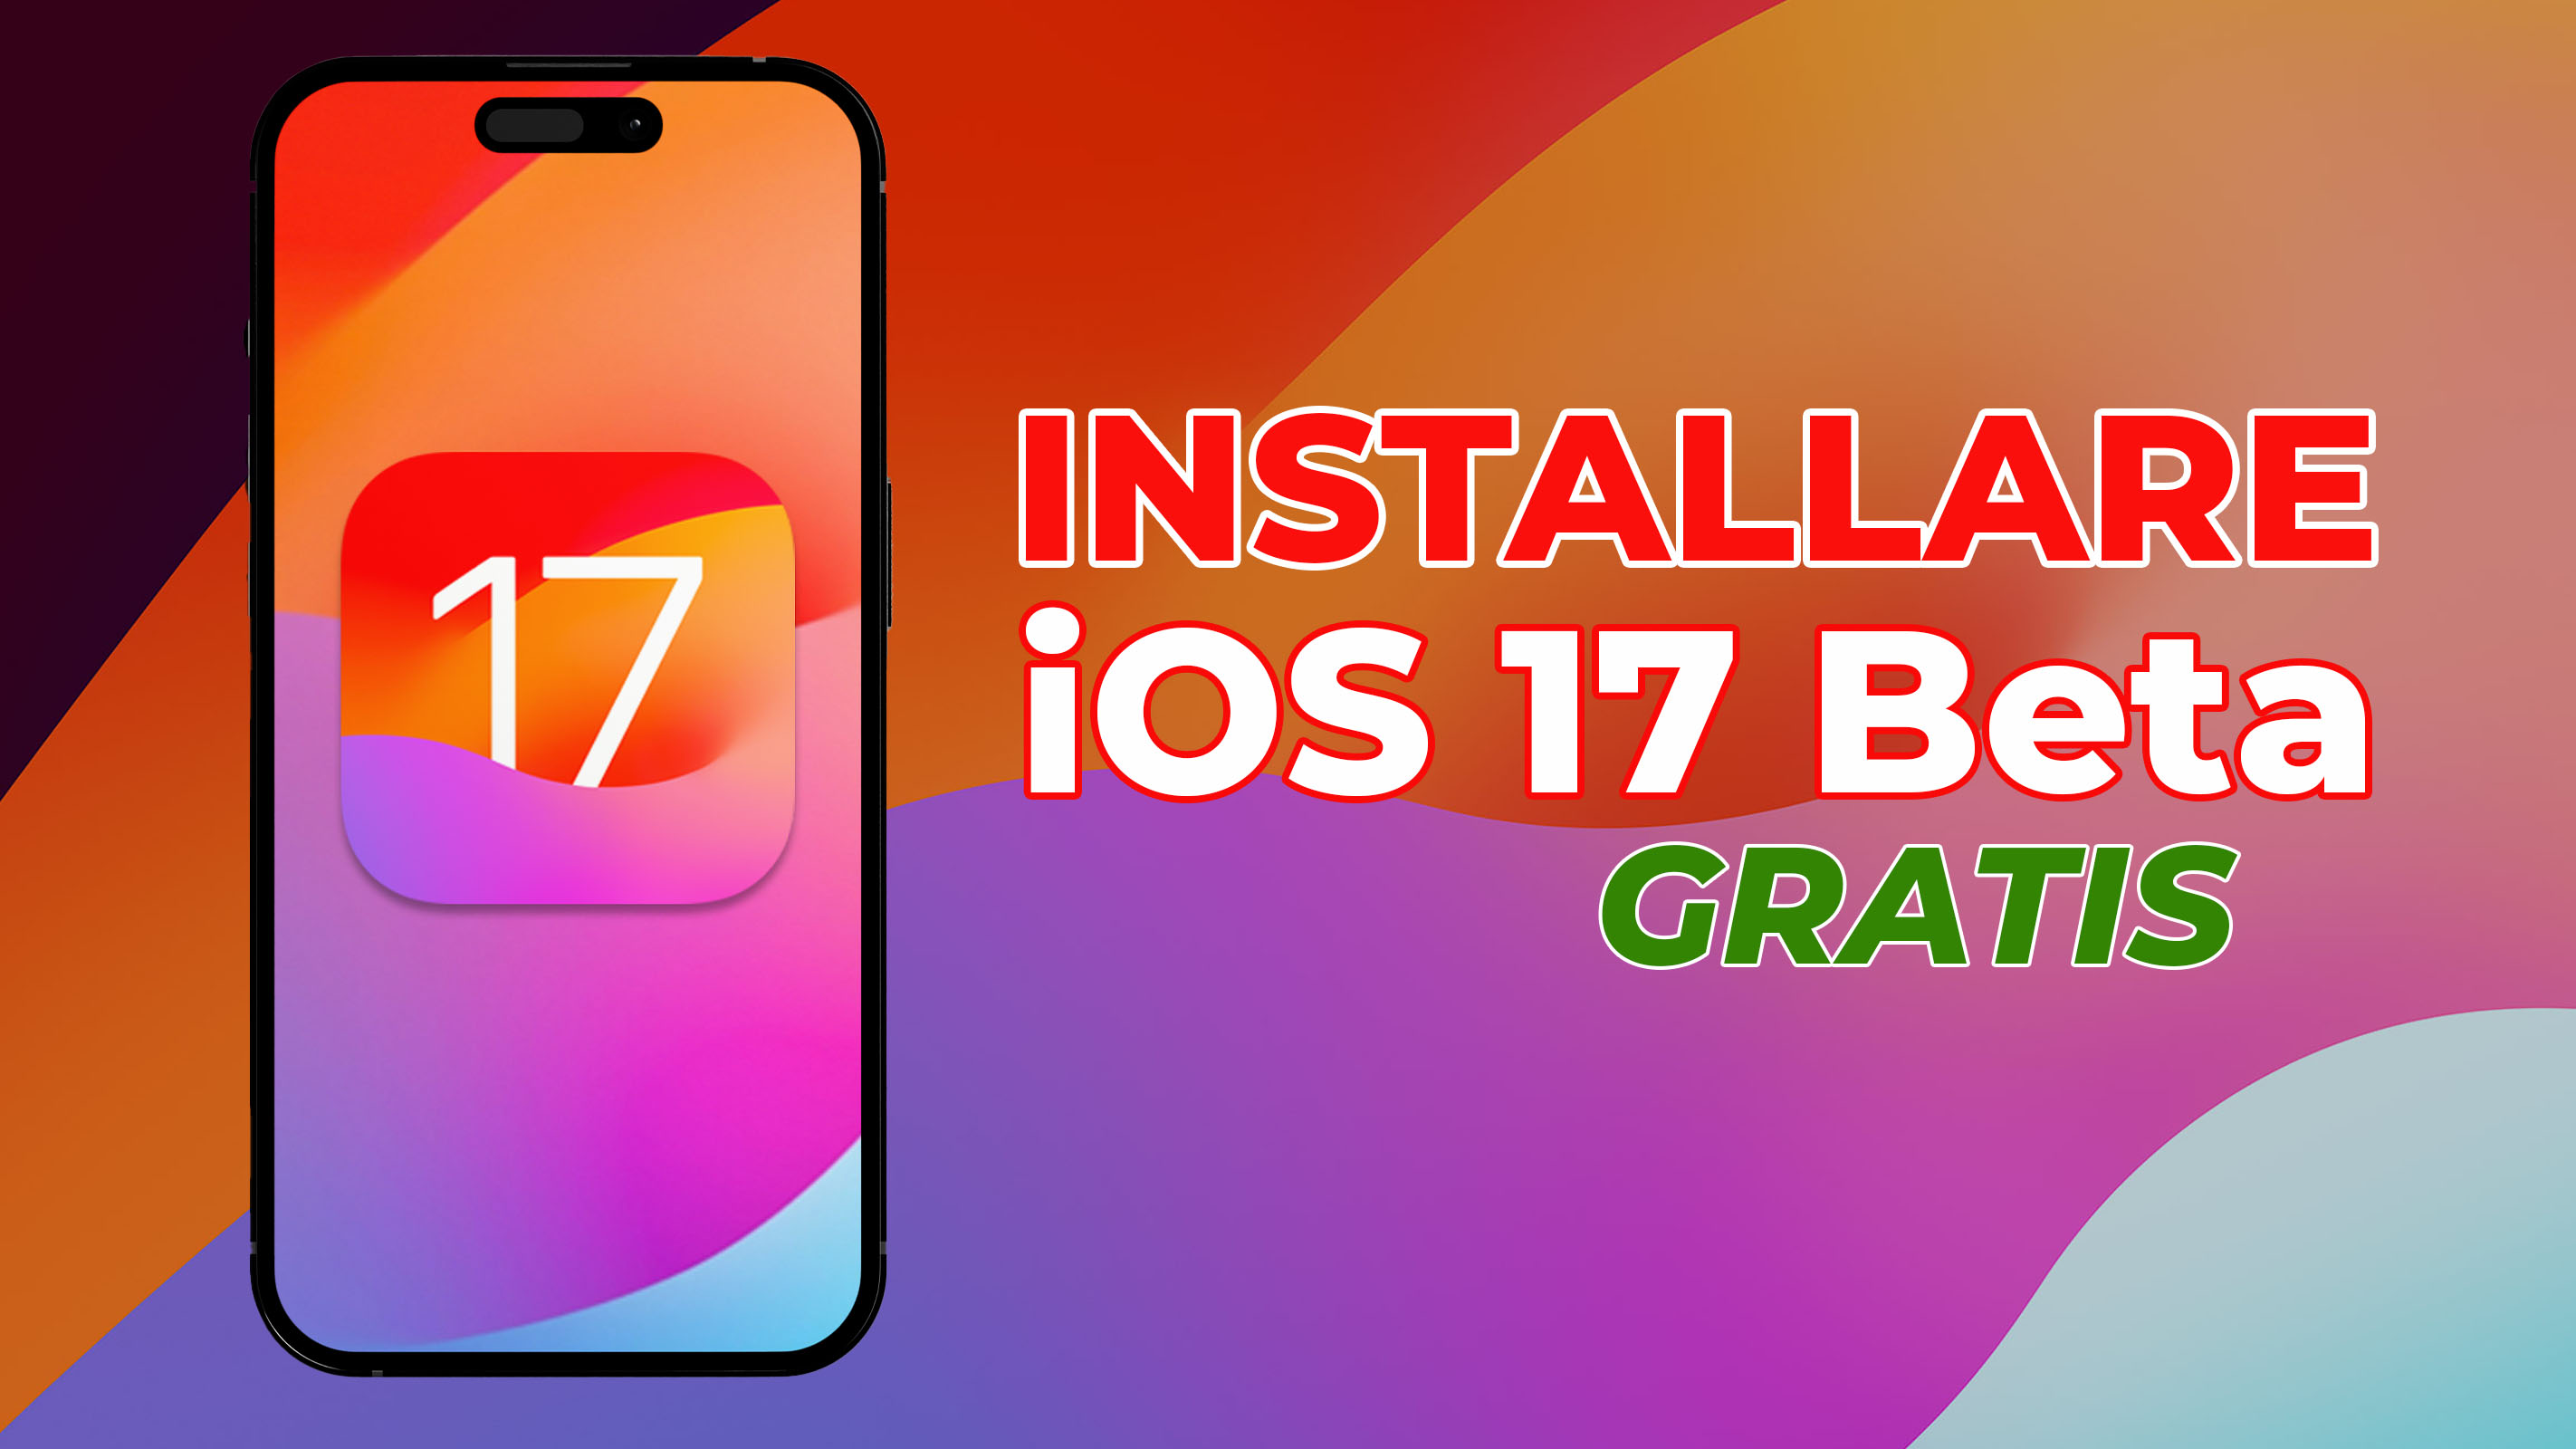 Installare-iOS-17-Beta-gratis-su-iPhone